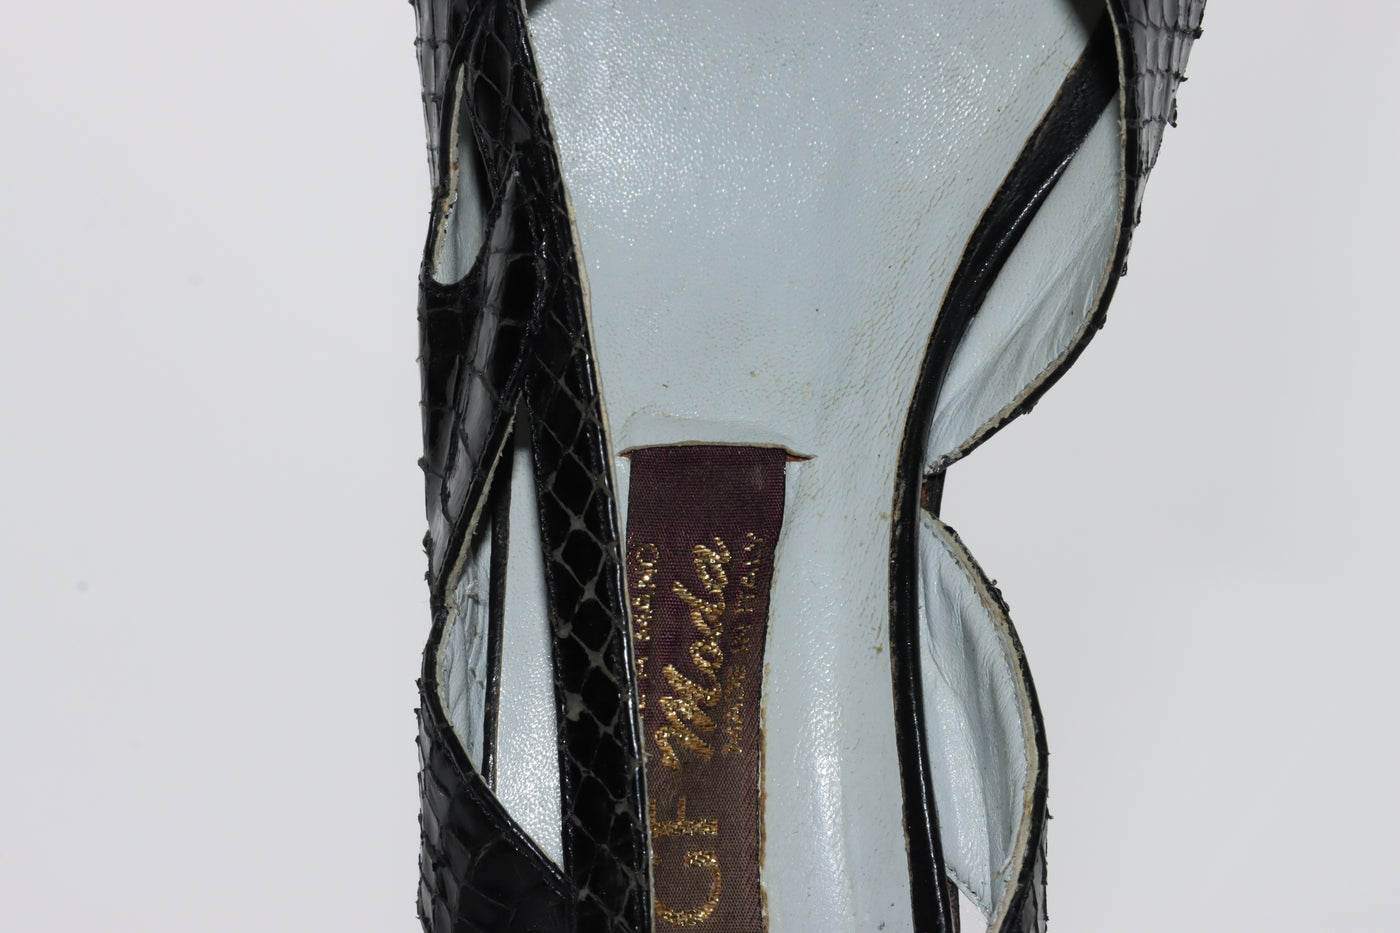 G.F. Moda Sandalo Vintage Anni 70' Basse Nero Pitonata Eur 37 Donna